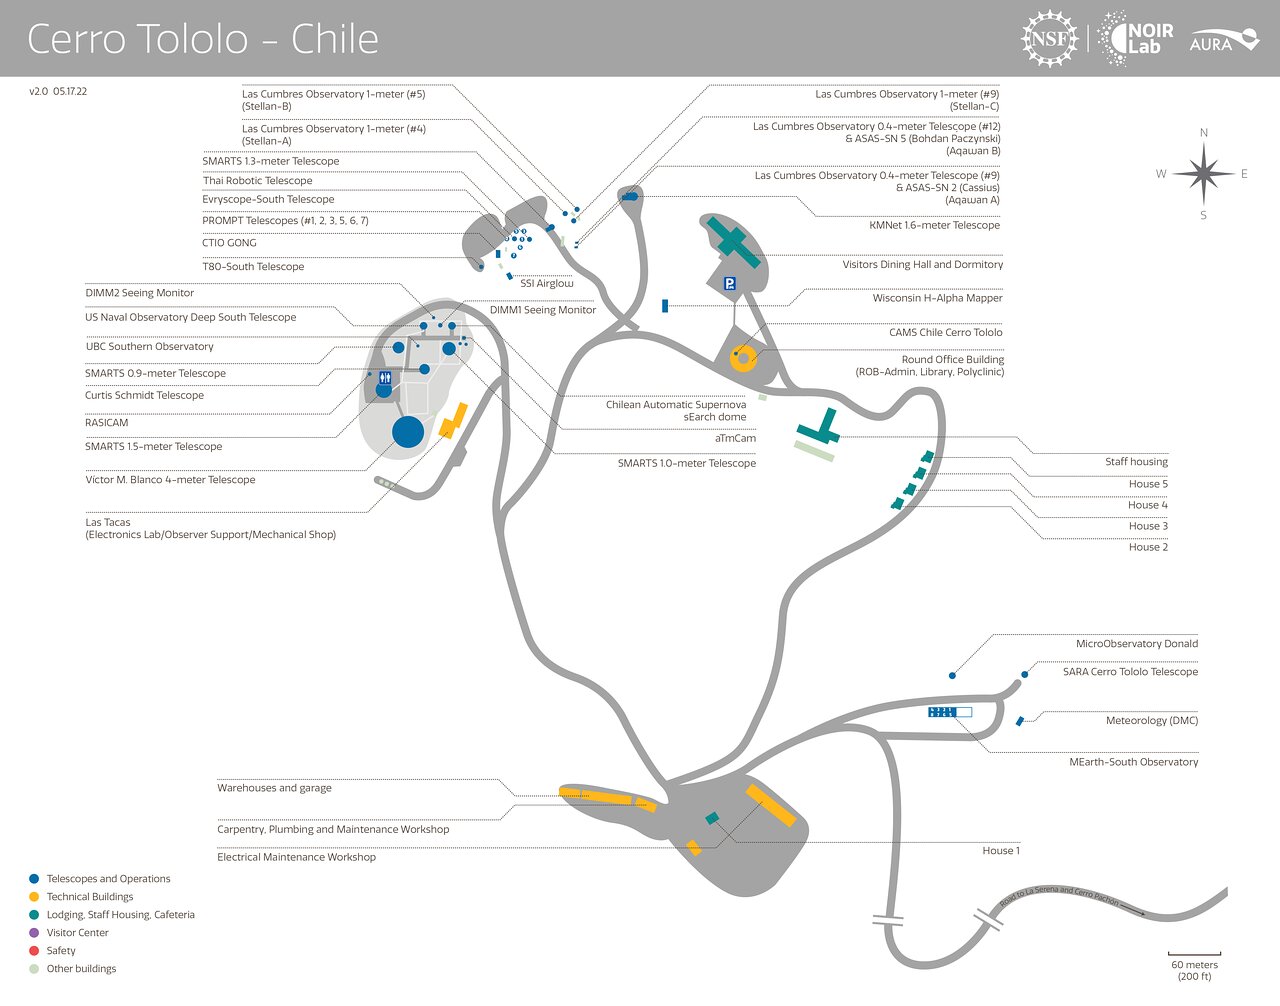 Cerro Tololo - Chile map